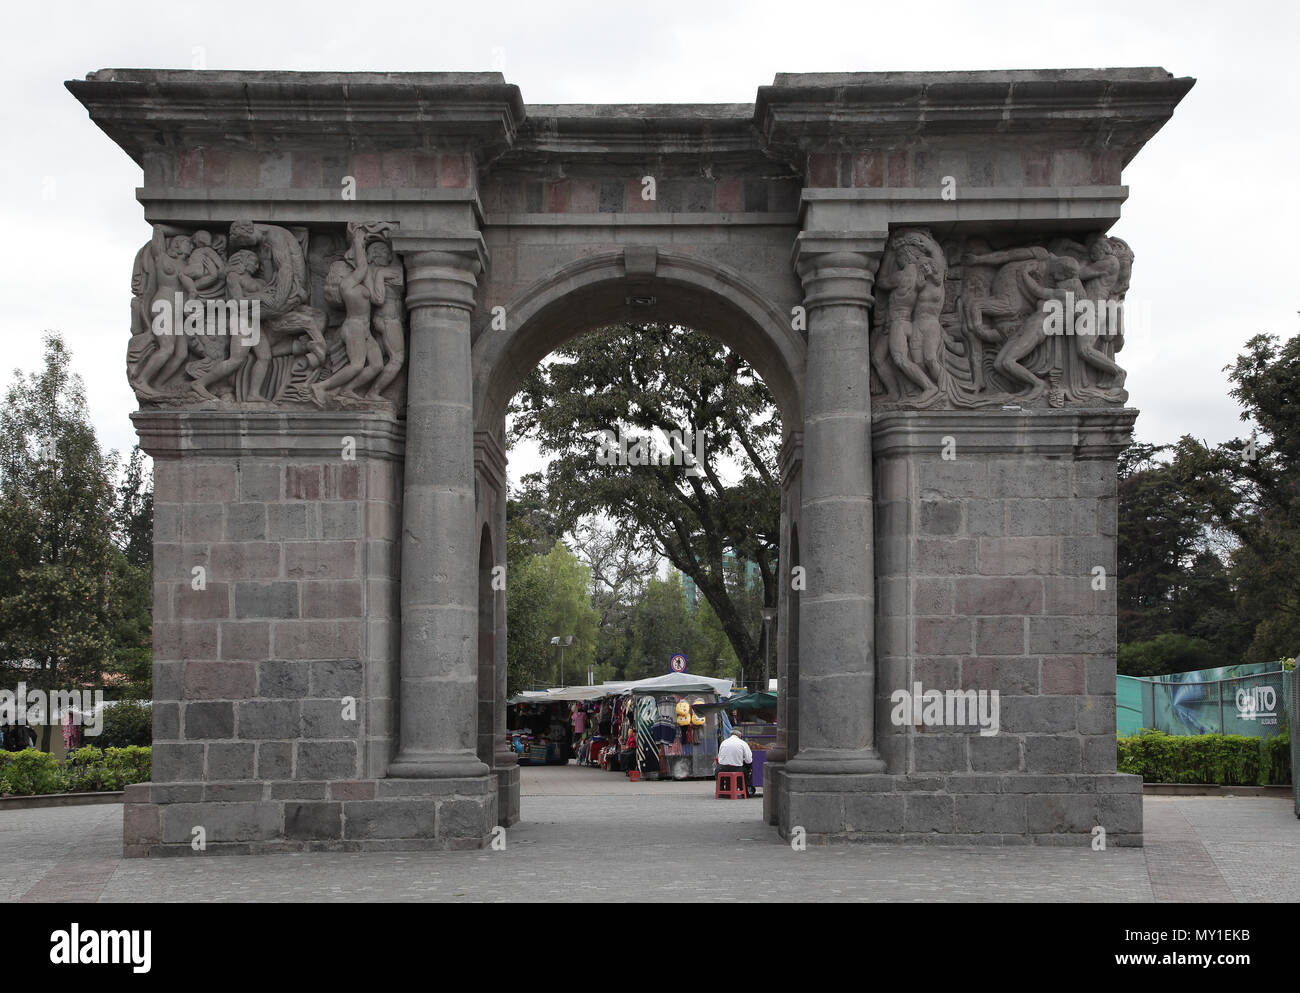 Puerta de la circasiana hi-res stock photography and images - Alamy